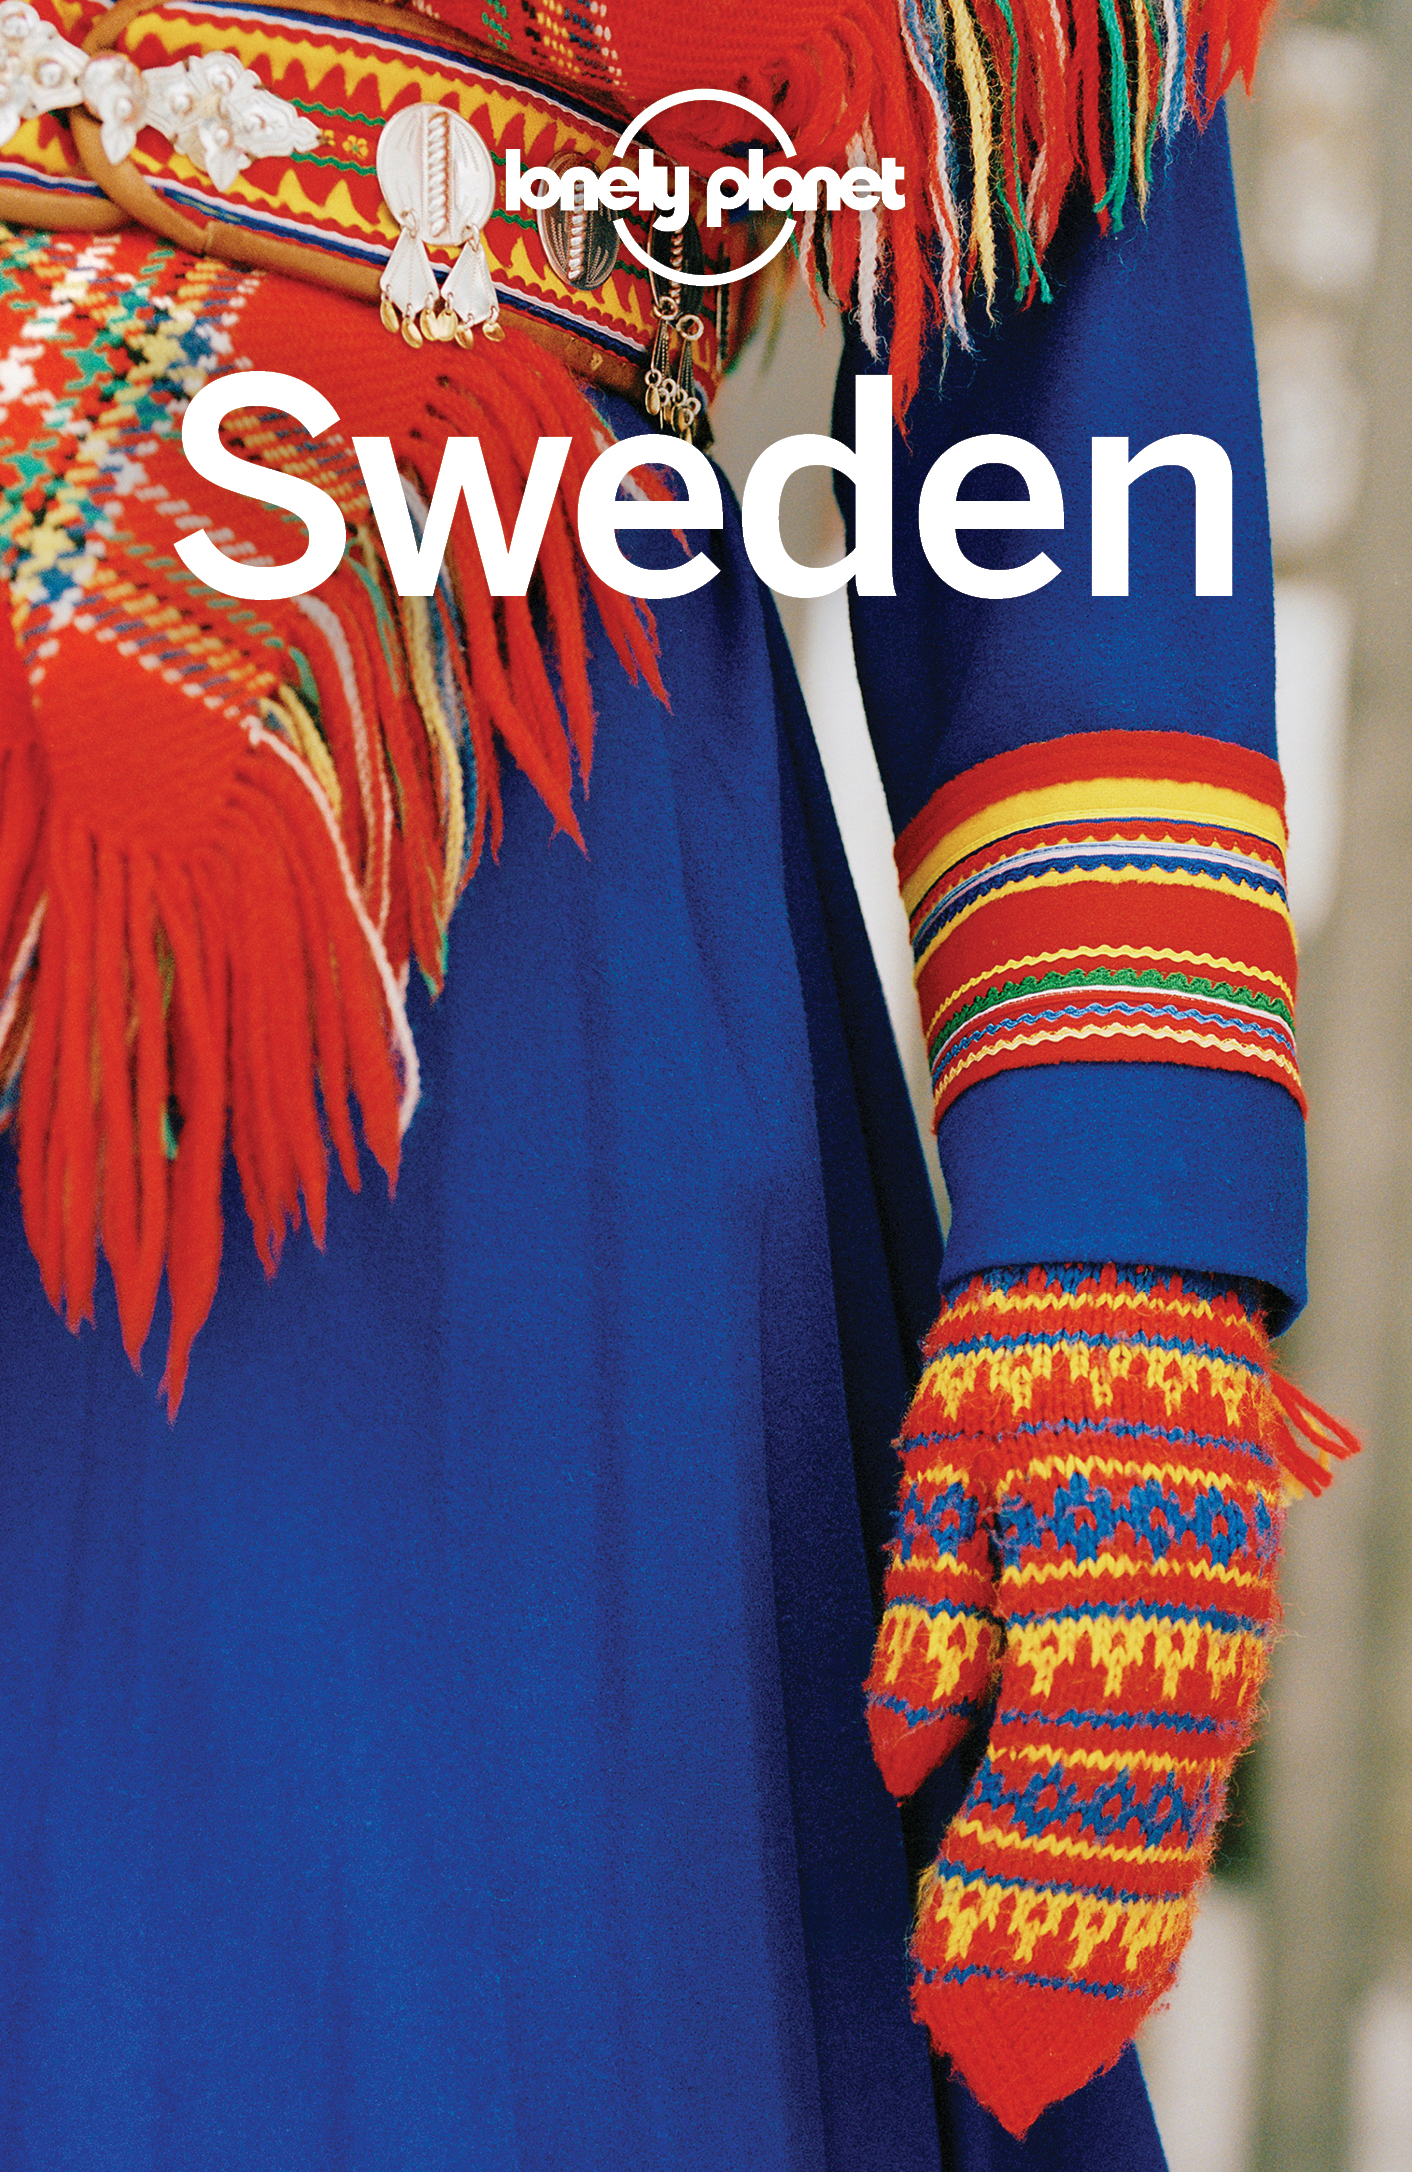 Sweden Travel Guide - image 1